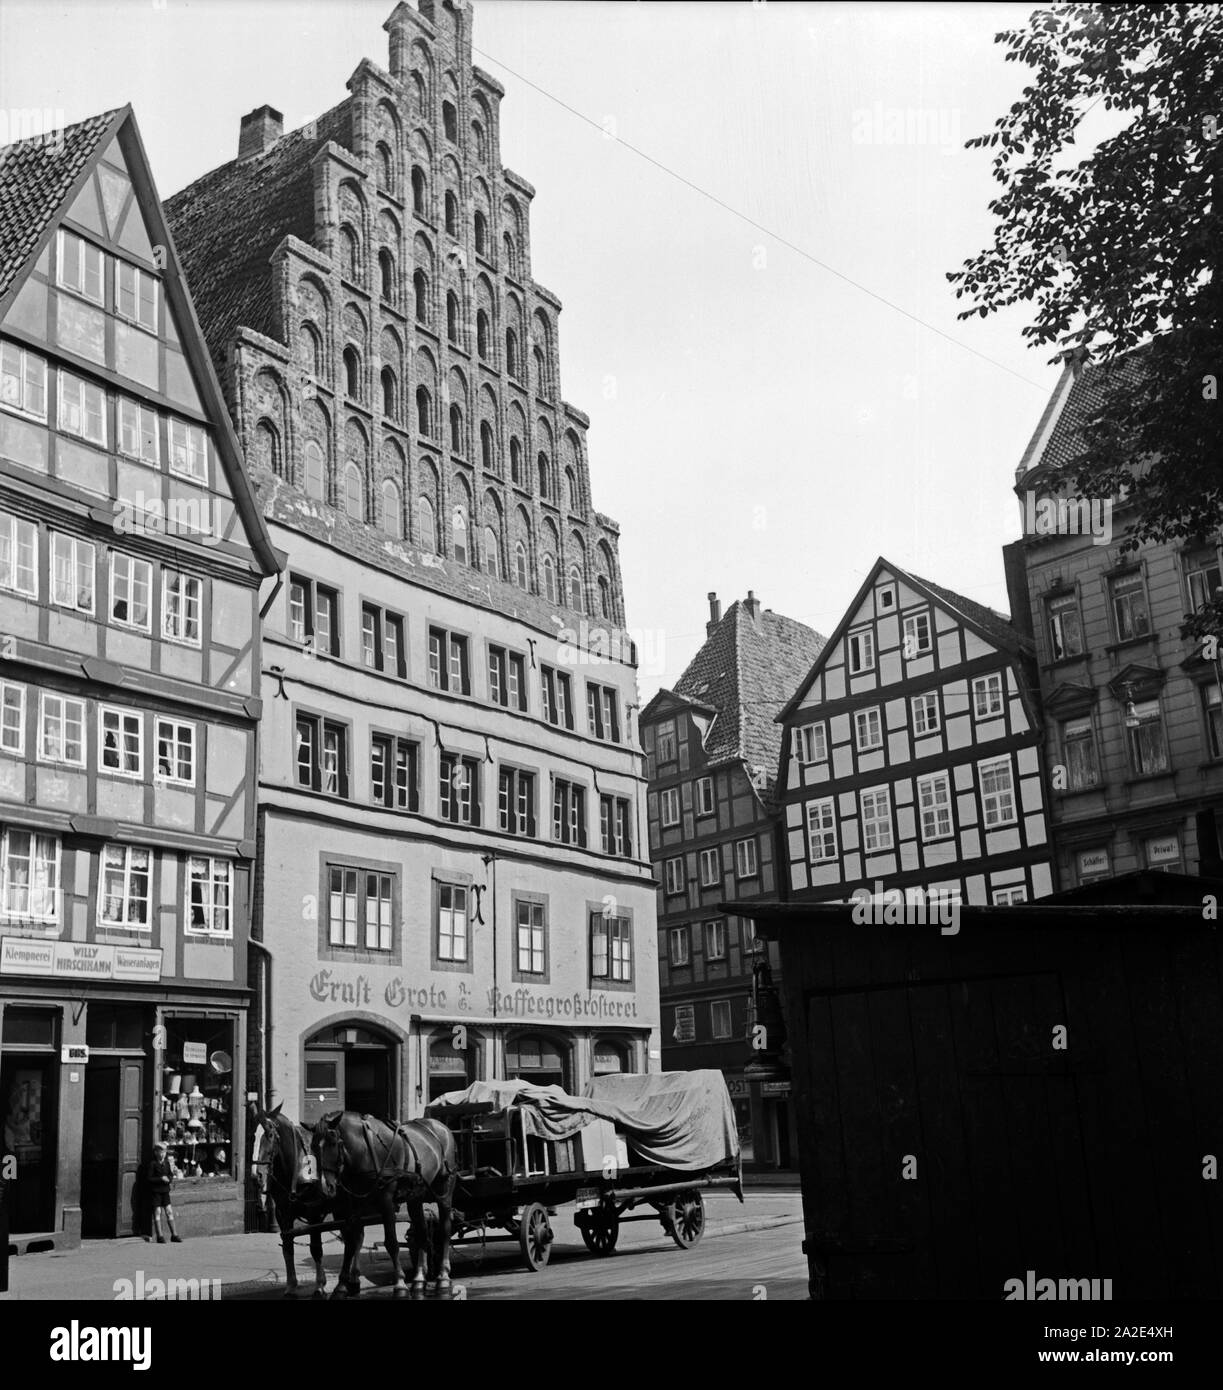 Die alte Kanzlei gegenüber der Ägidienkirche in Hannover, Deutschland 1930er Jahre. Cancelleria vecchio nella vecchia città di Hannover, Germania 1930s. Foto Stock